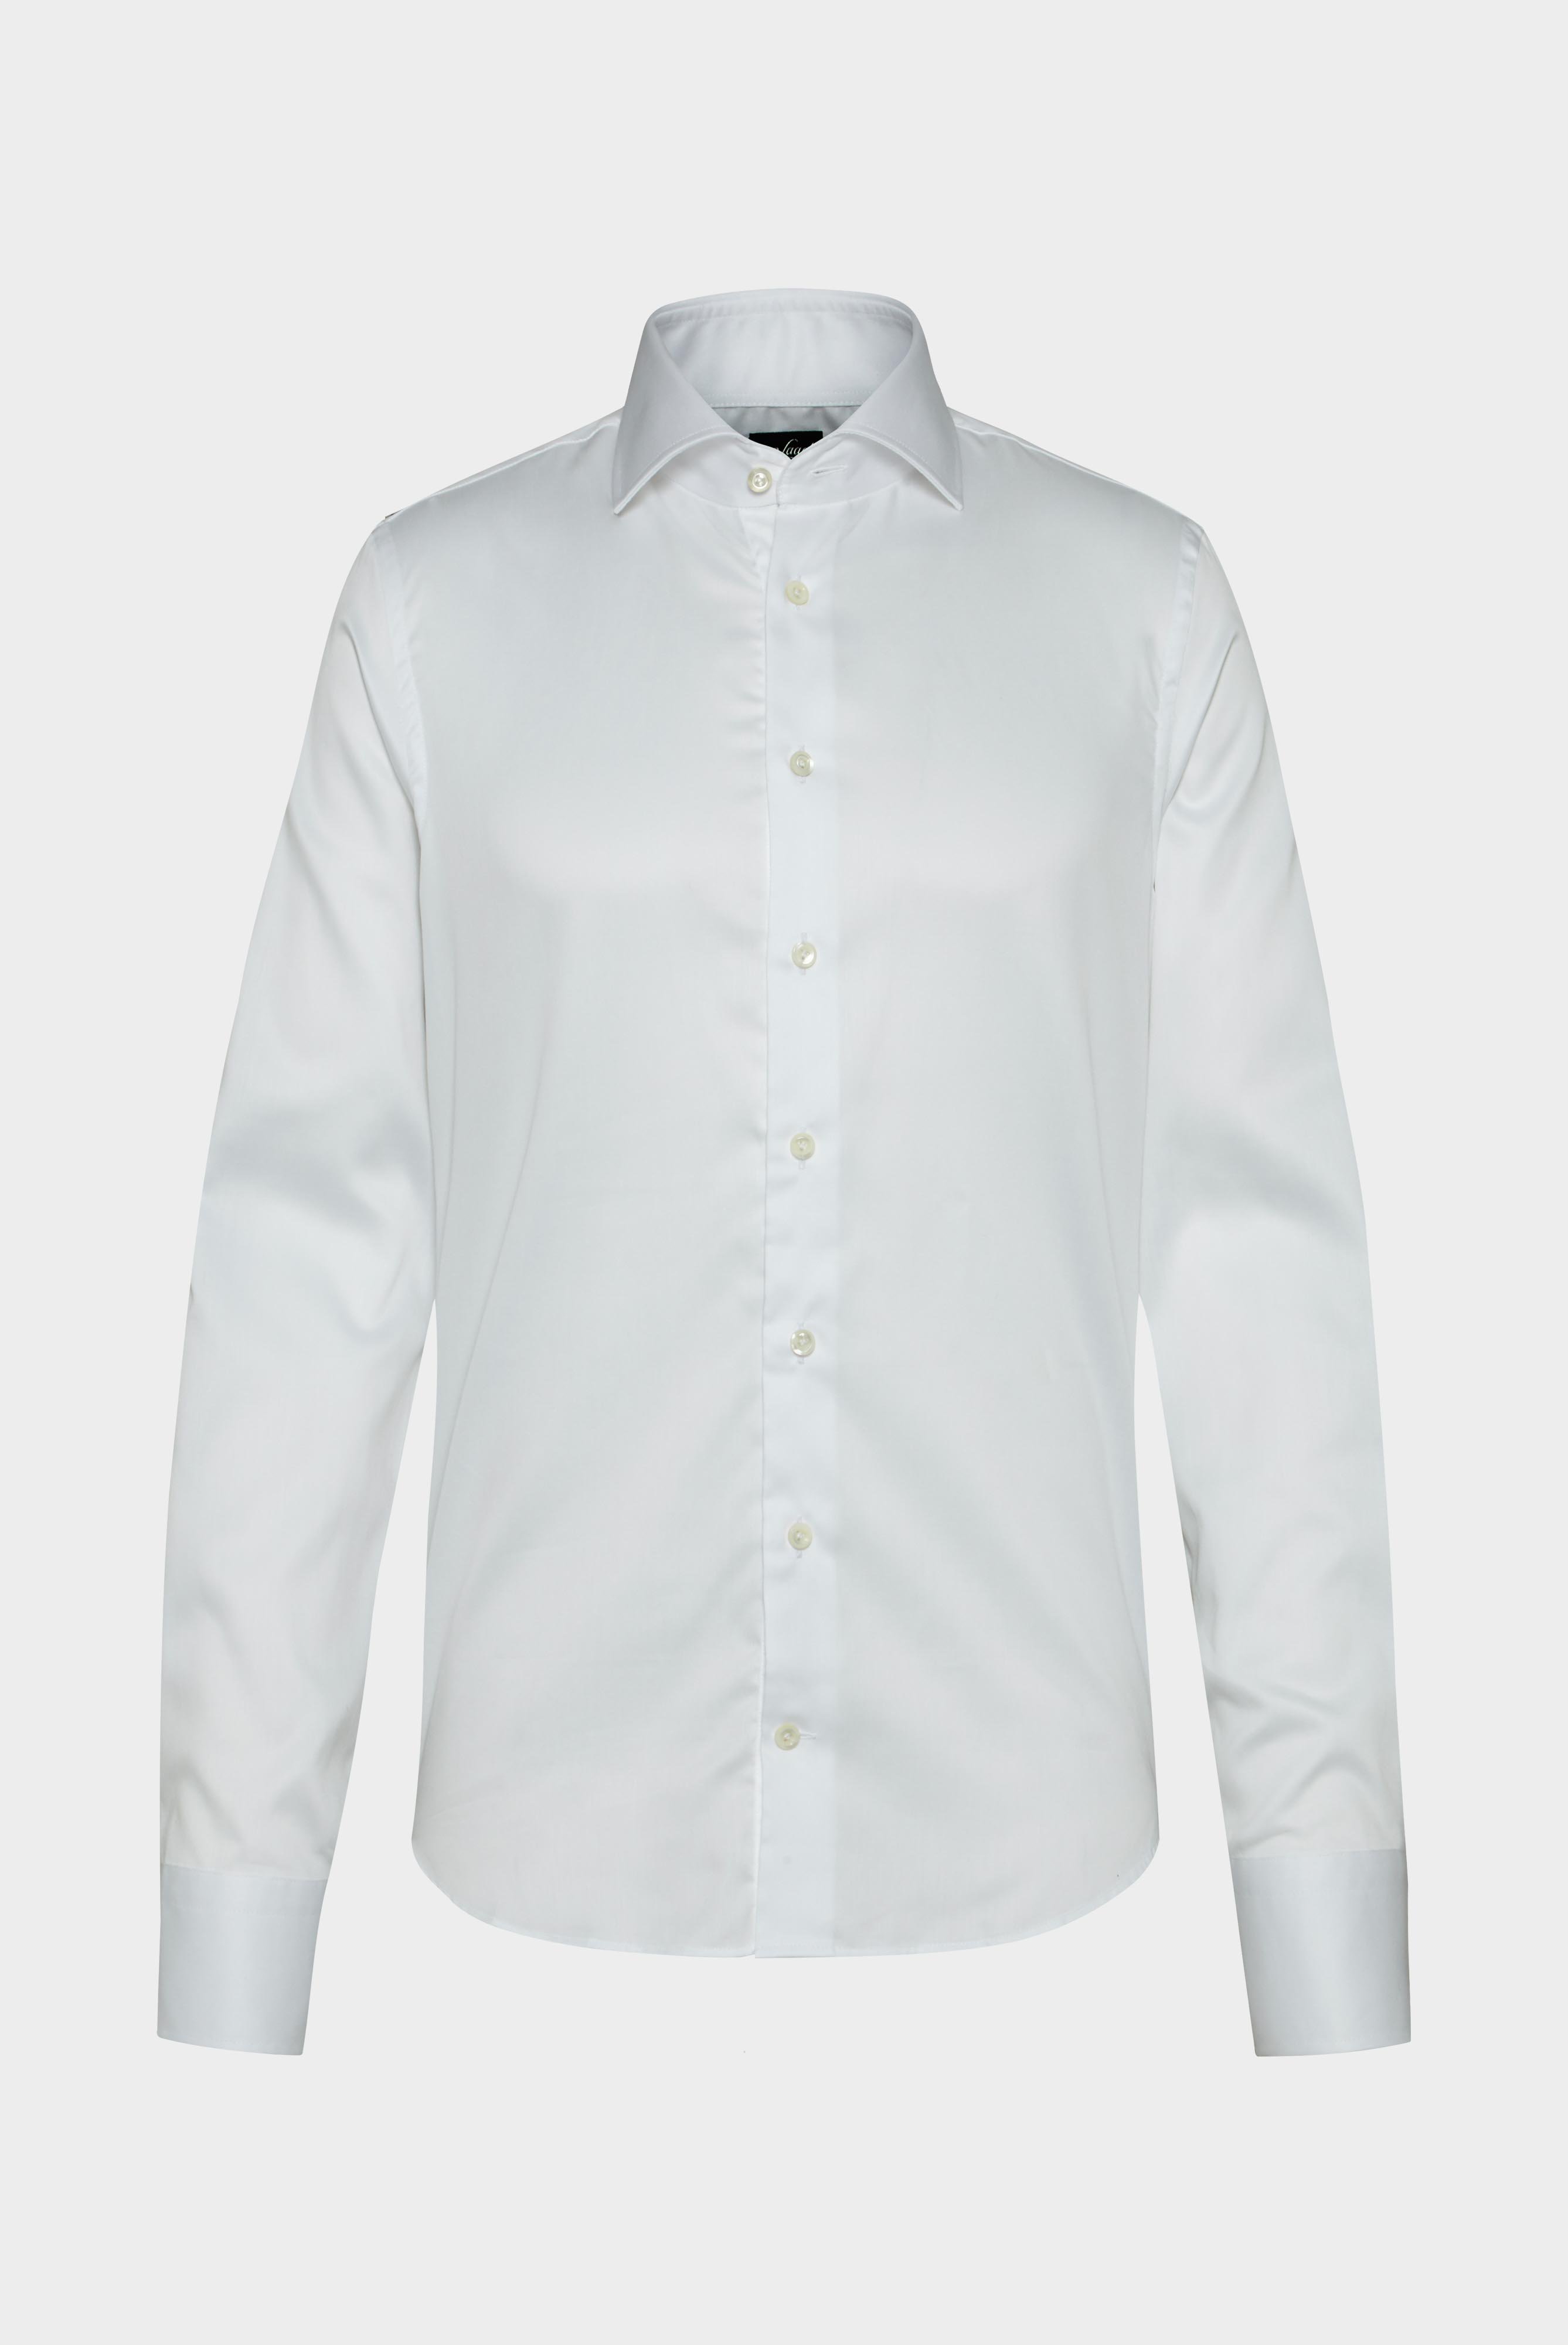 Bügelleichte Hemden+Bügelfreies Twill Hemd Slim Fit+20.2019.BQ.132241.000.39